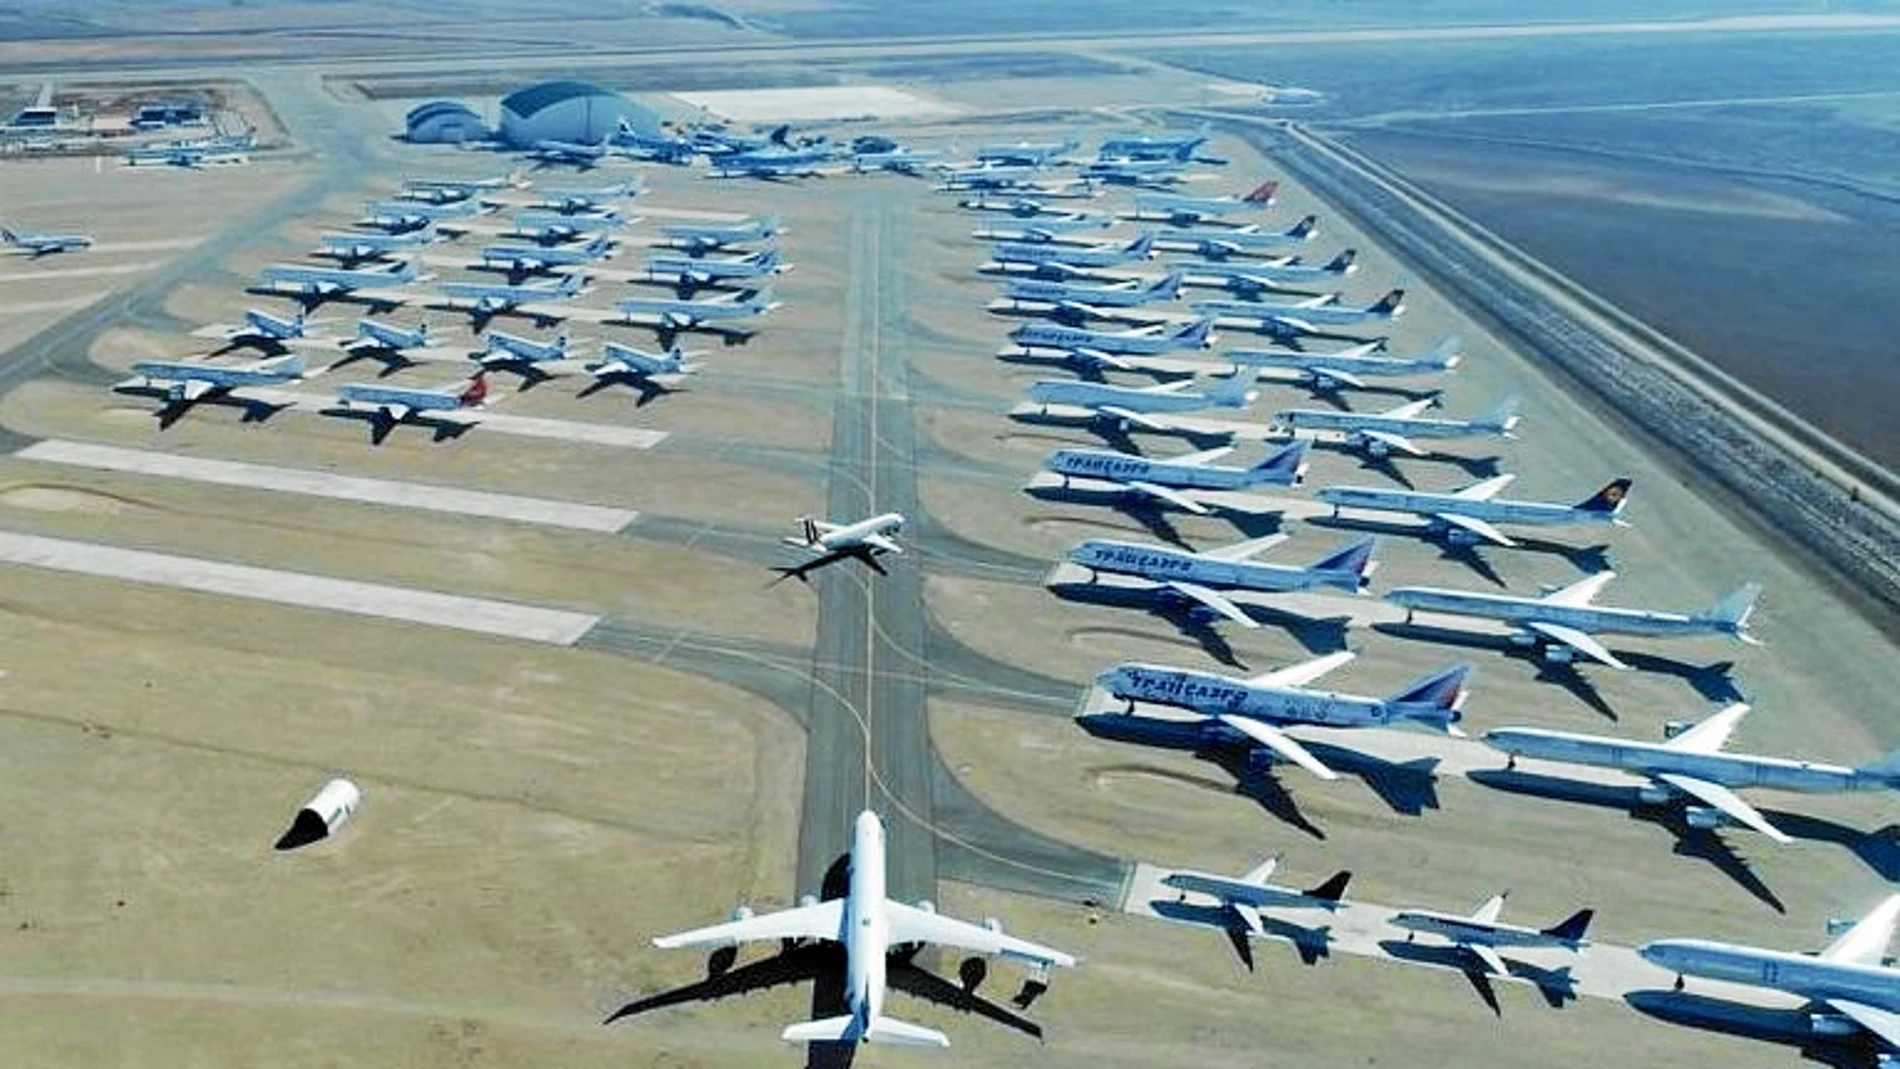 Las instalaciones del aeródromo de Teruel albergan el mayor centro de mantenimiento, almacenaje y reciclado de aeronaves de Europa